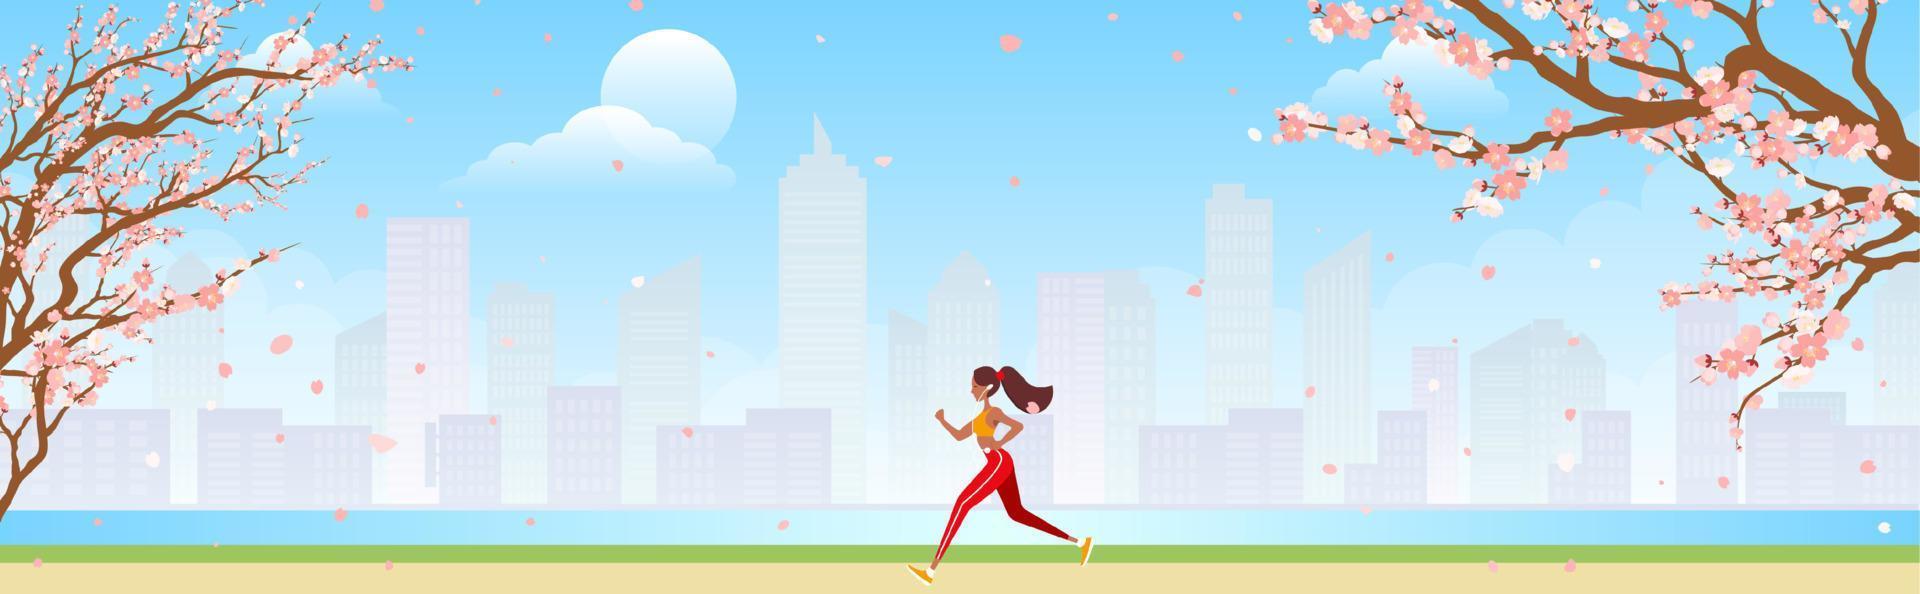 corredor treinando ao ar livre. garota esportiva correndo pelo caminho do parque da cidade pela manhã. ilustração vetorial para saúde, estilo de vida ativo, exercício matinal, conceito de corrida. vetor